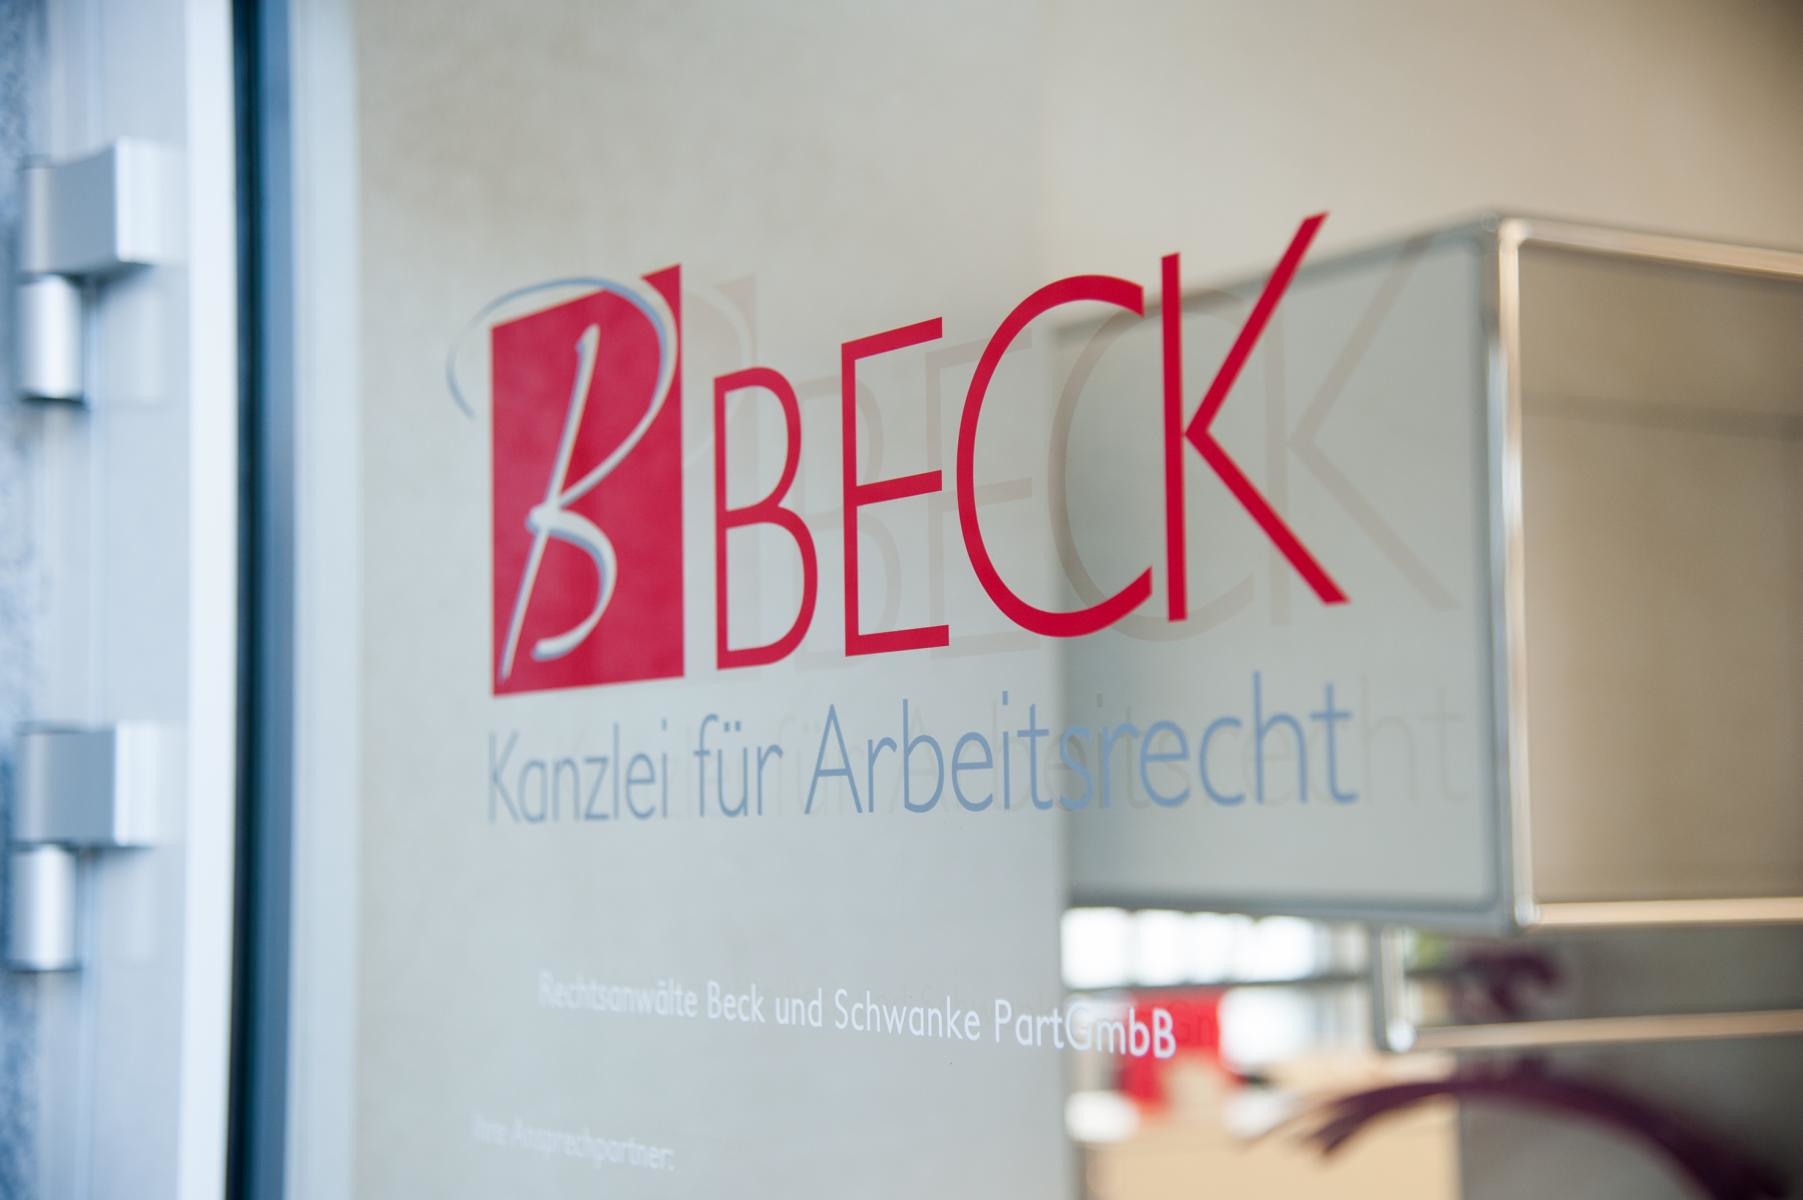 Kundenfoto 3 BECK Kanzlei für Arbeitsrecht - Rechtsanwälte Beck und Schwanke PartGmbB